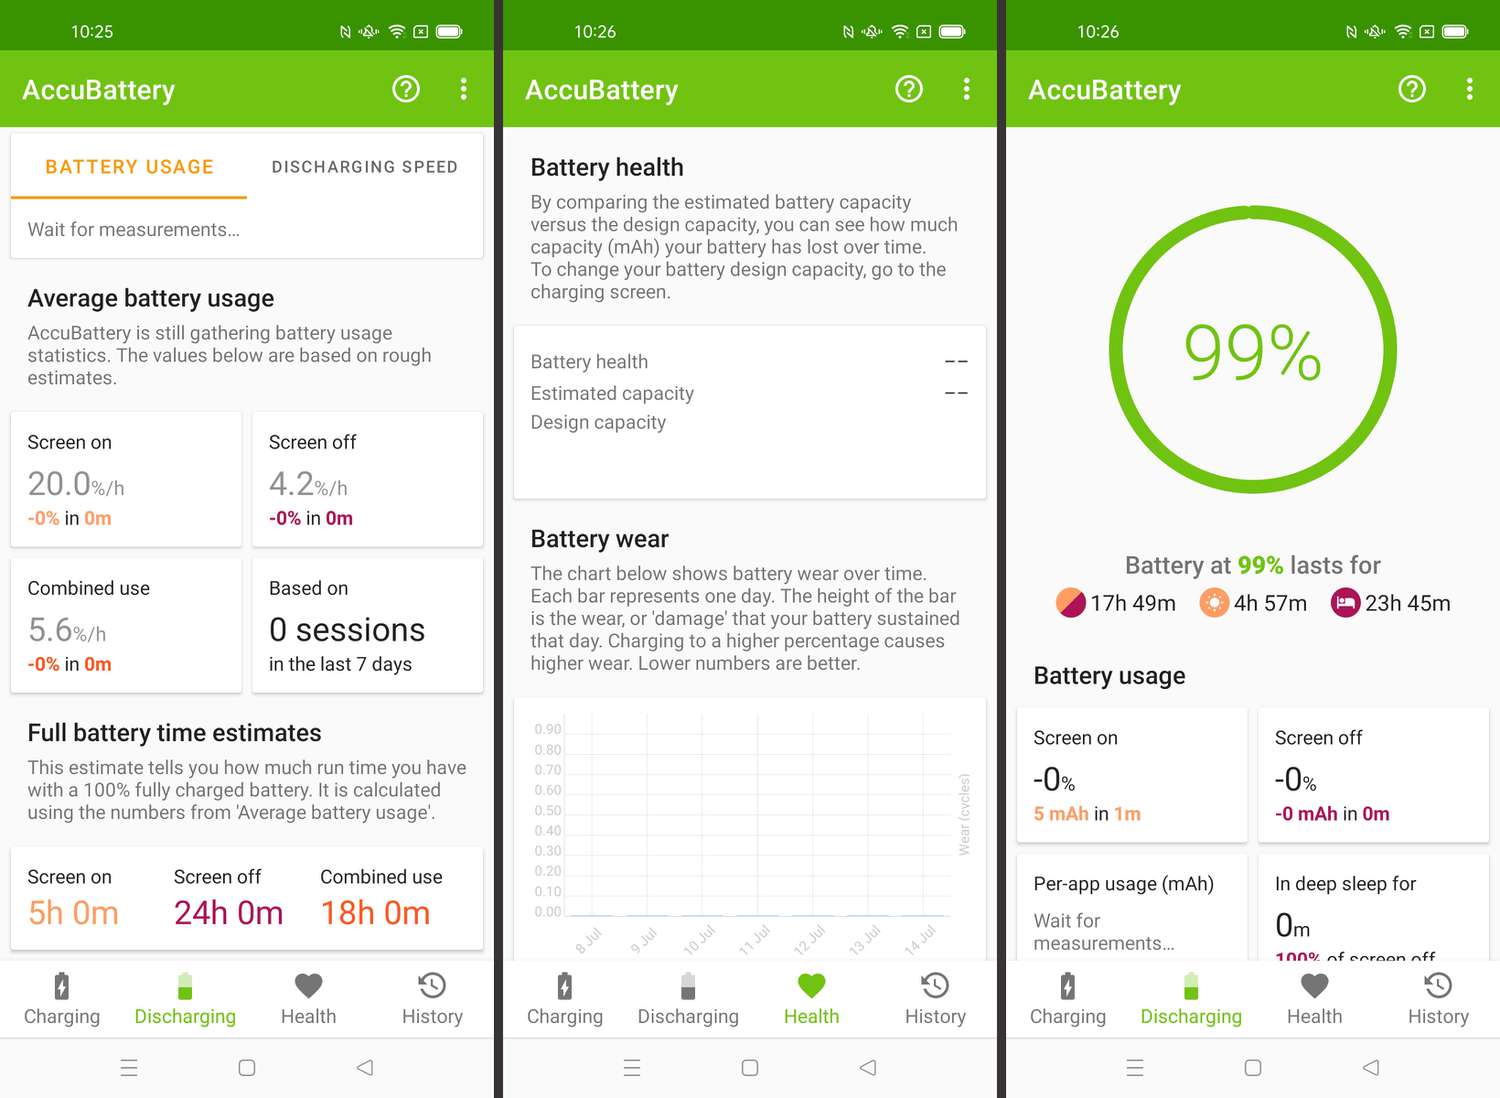 Etapas necessárias para visualizar a integridade da bateria no Android via AccuBattery